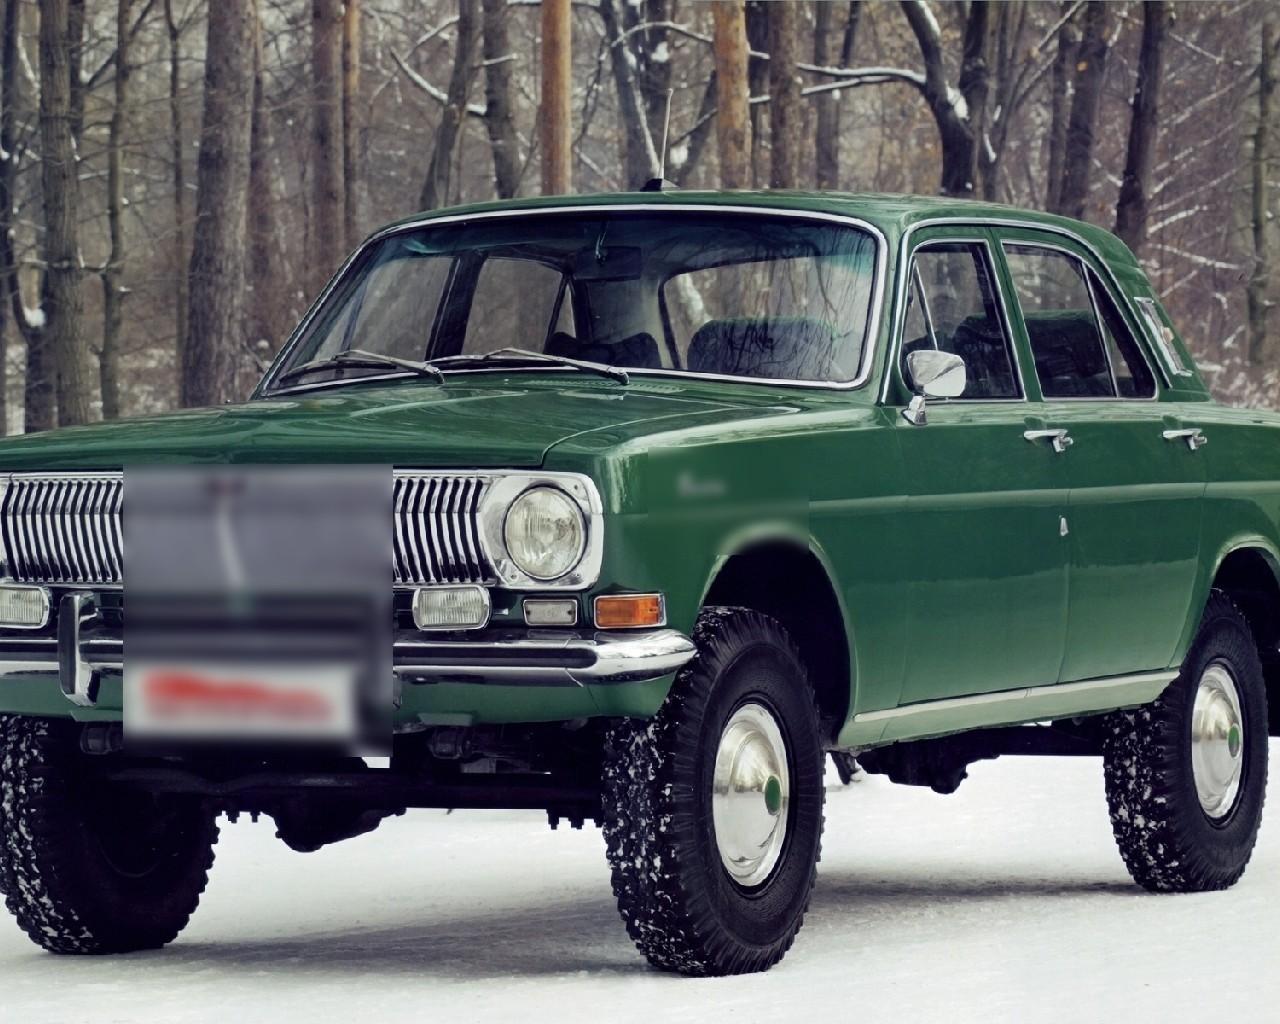 Легковой автомобиль волга. ГАЗ 24-95 Волга. ГАЗ Volga 1973. ГАЗ 24 Волга зеленая. Волга ГАЗ 24 1973.